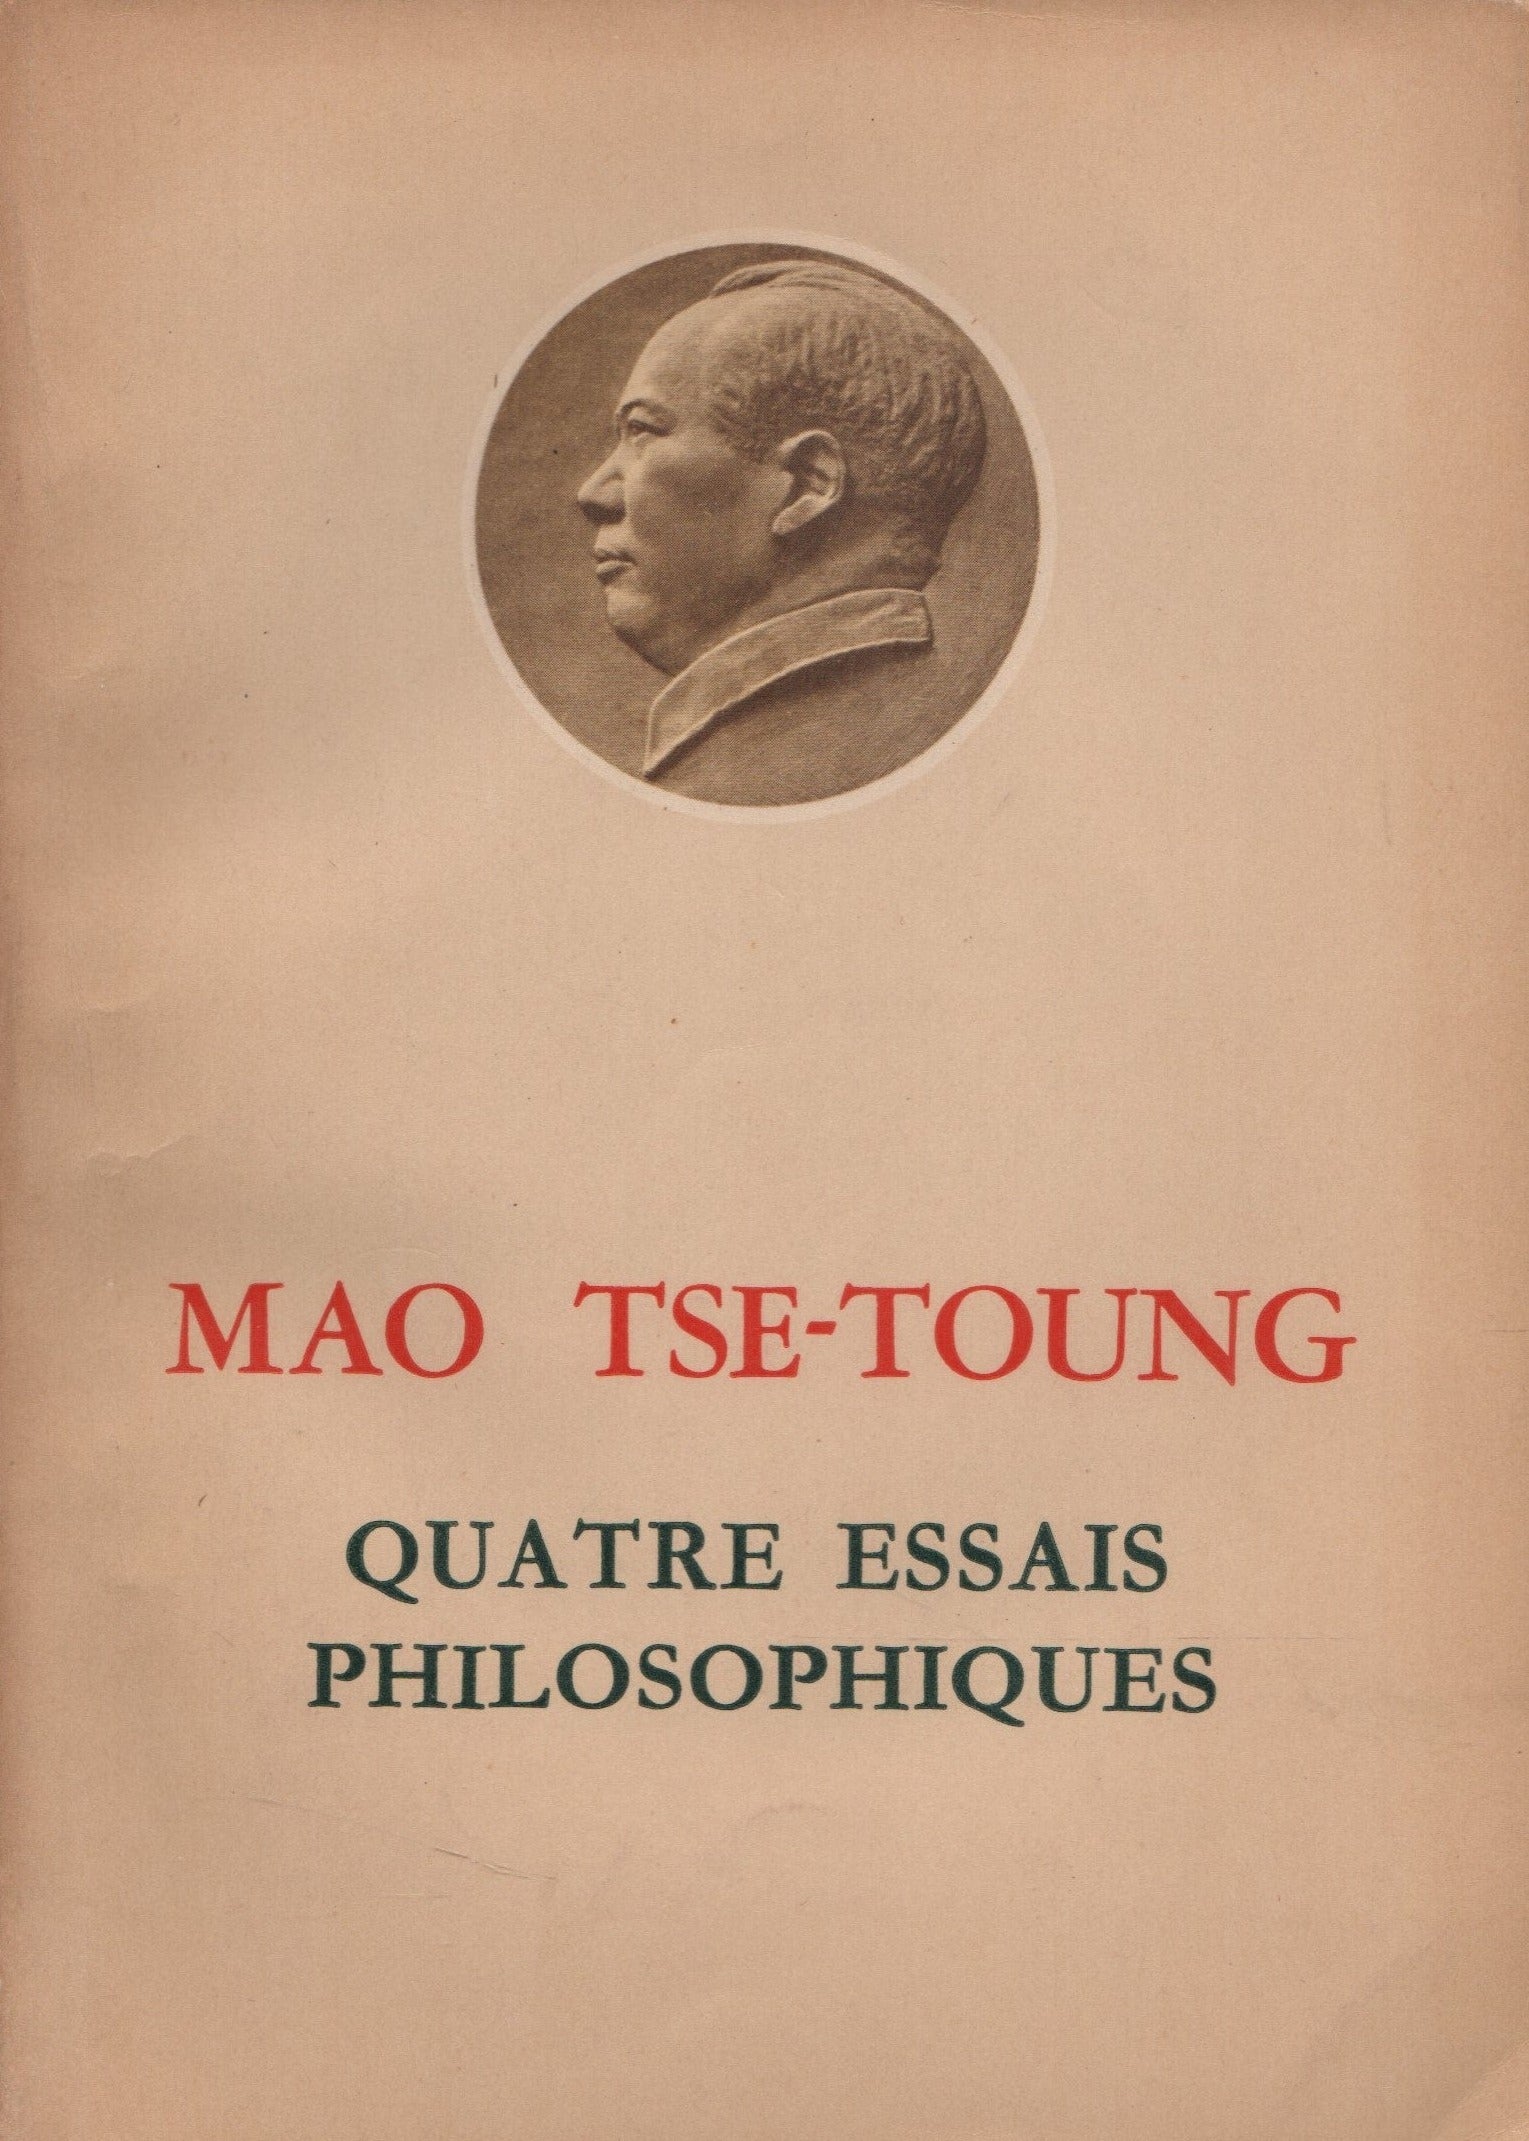 TSE-TOUNG, MAO. Quatre essais philosophiques